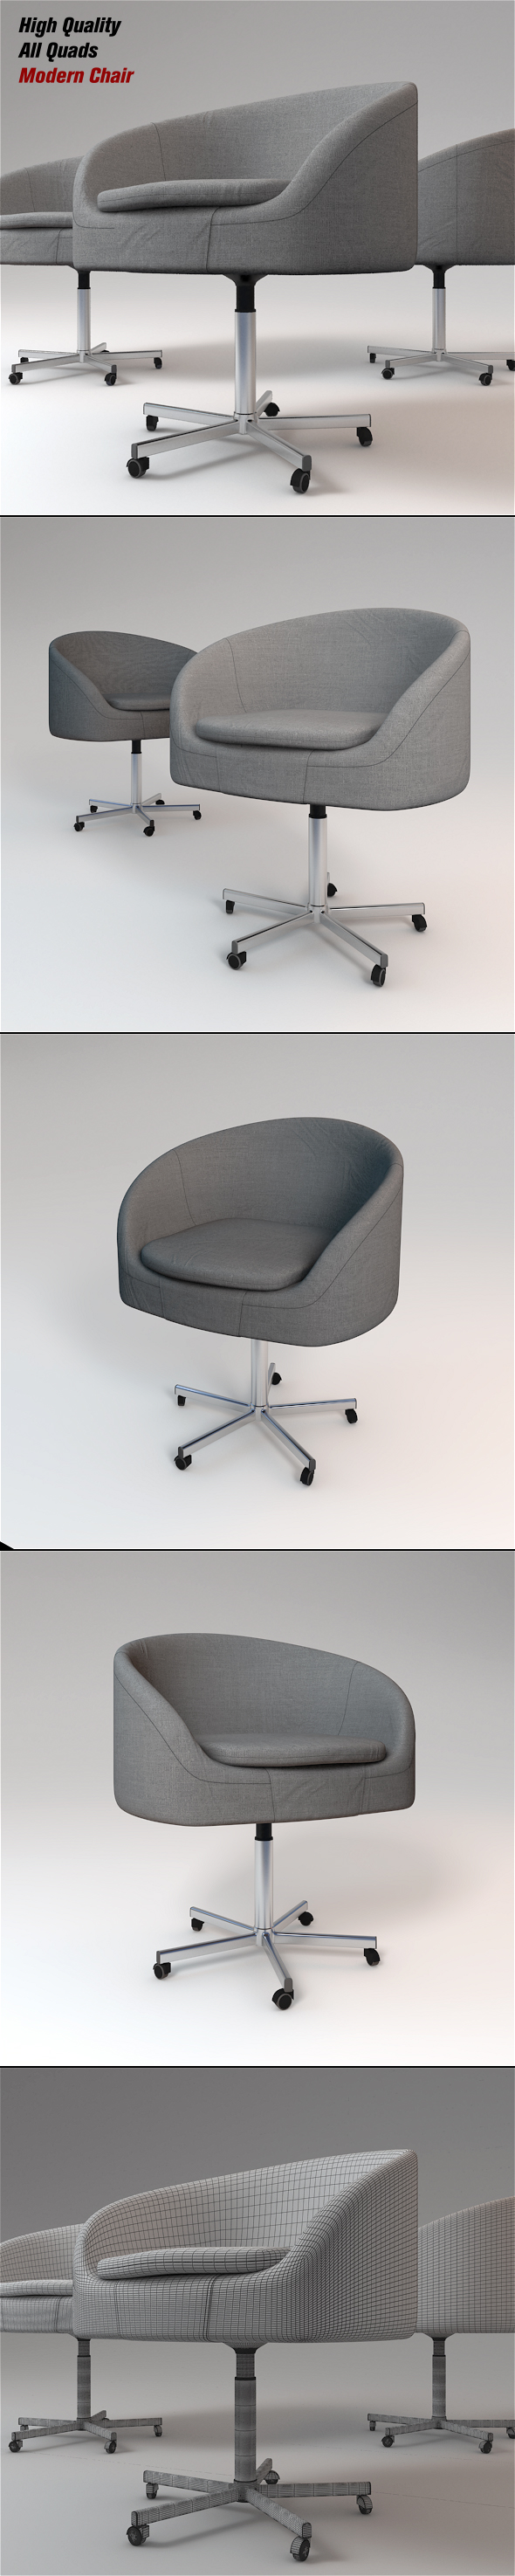 Modern Chair - 3Docean 22896496